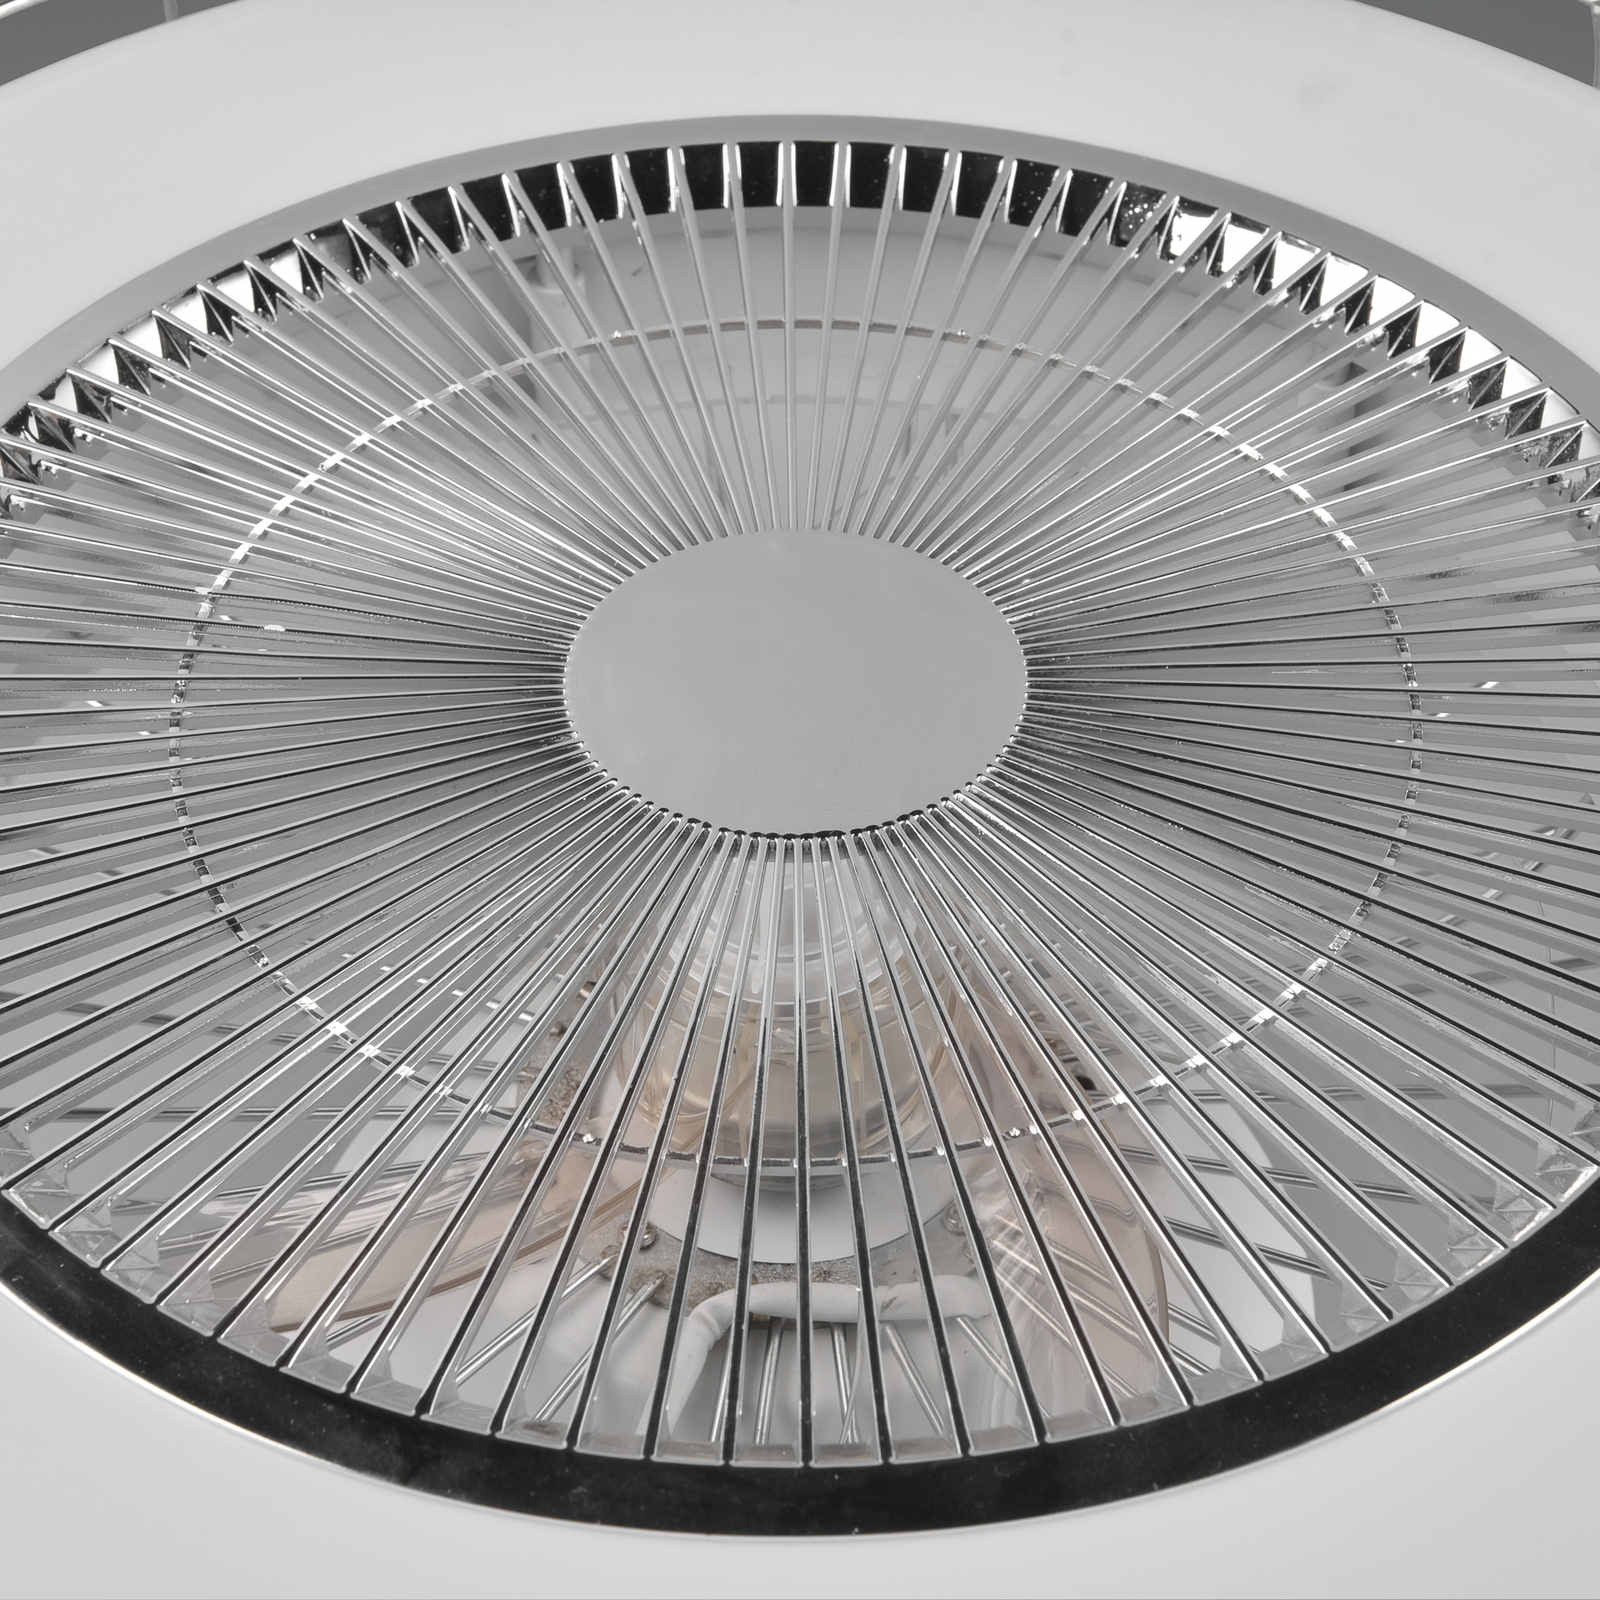 Smart LED ceiling fan Sandfjord, quiet, chrome, Ø 50 cm